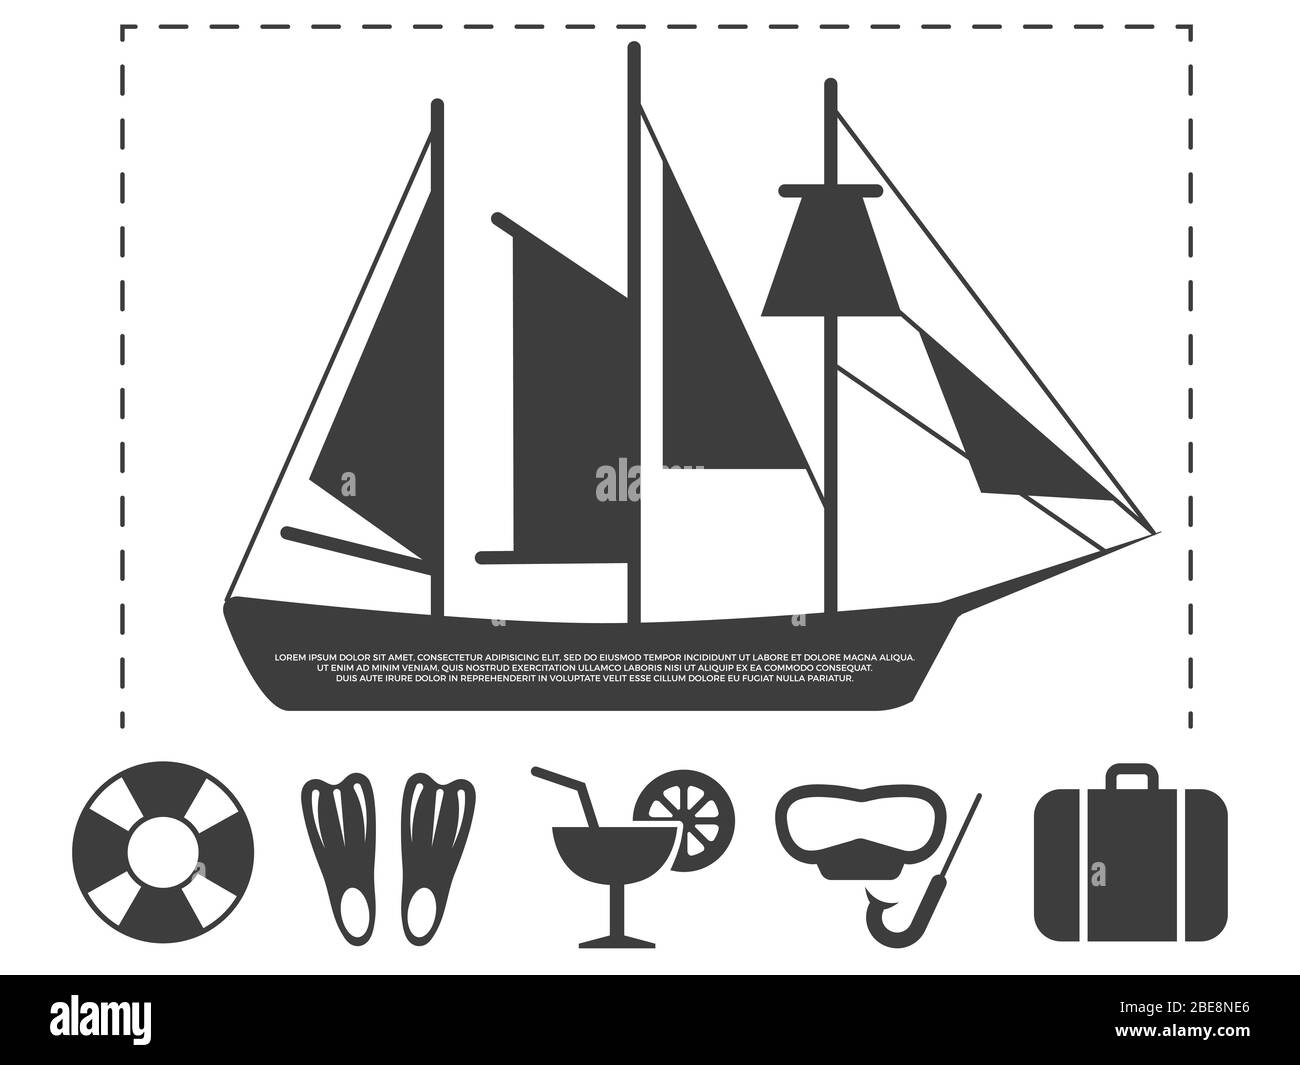 Segelboot Reise Info Poster Elemente mit Wasser Urlaub auf See intertaiment Icons Stock Vektor